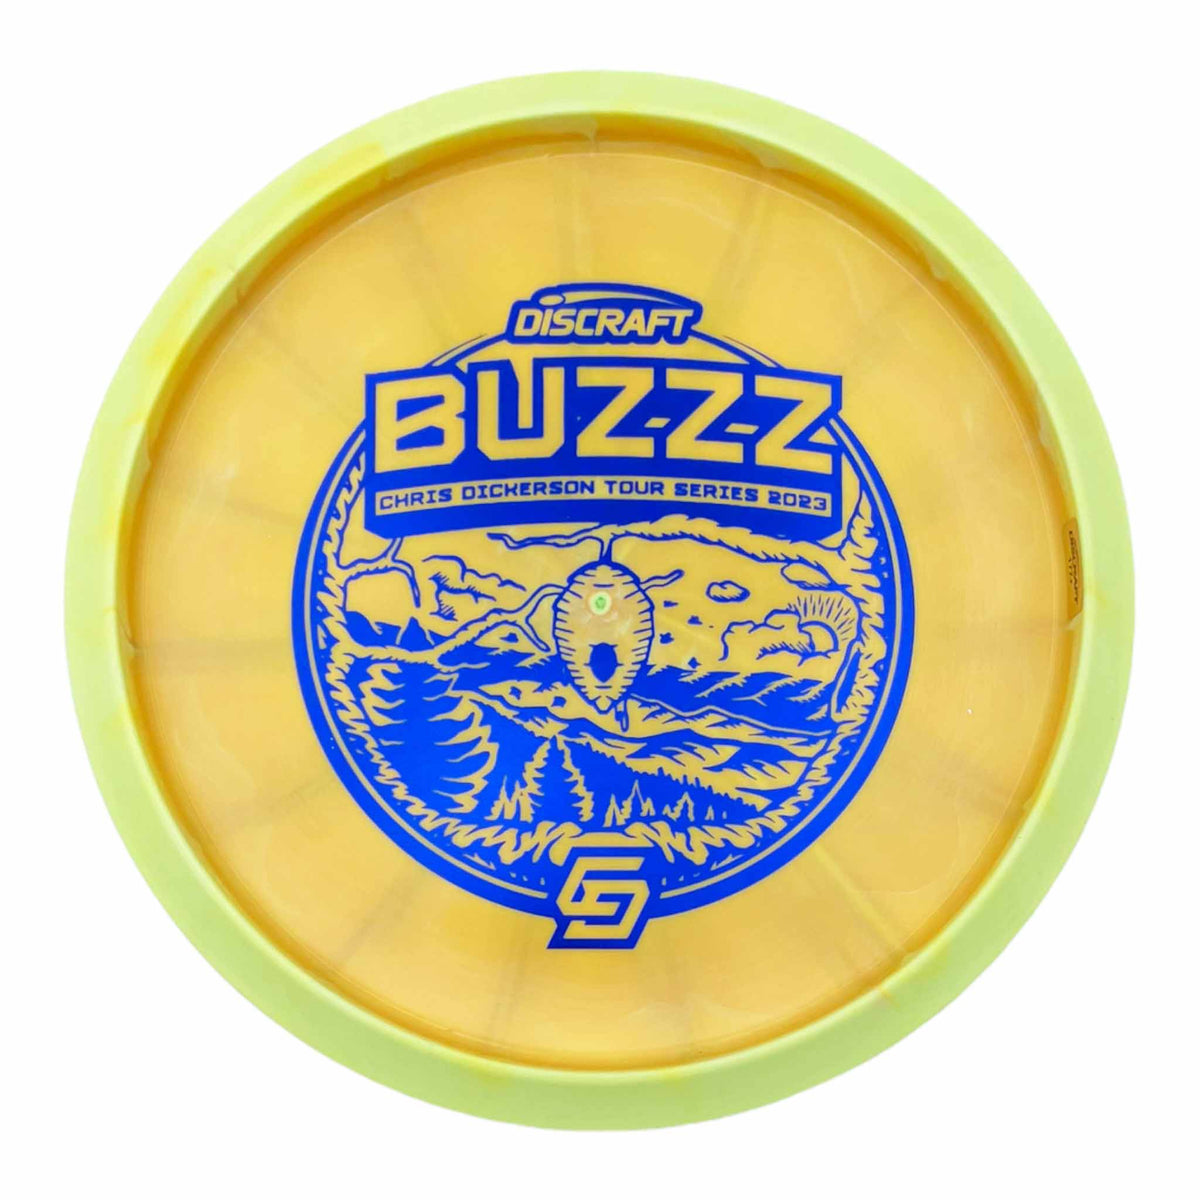 Discraft 2023 Chris Dickerson Tour Series Buzzz midrange - Yellow / Blue